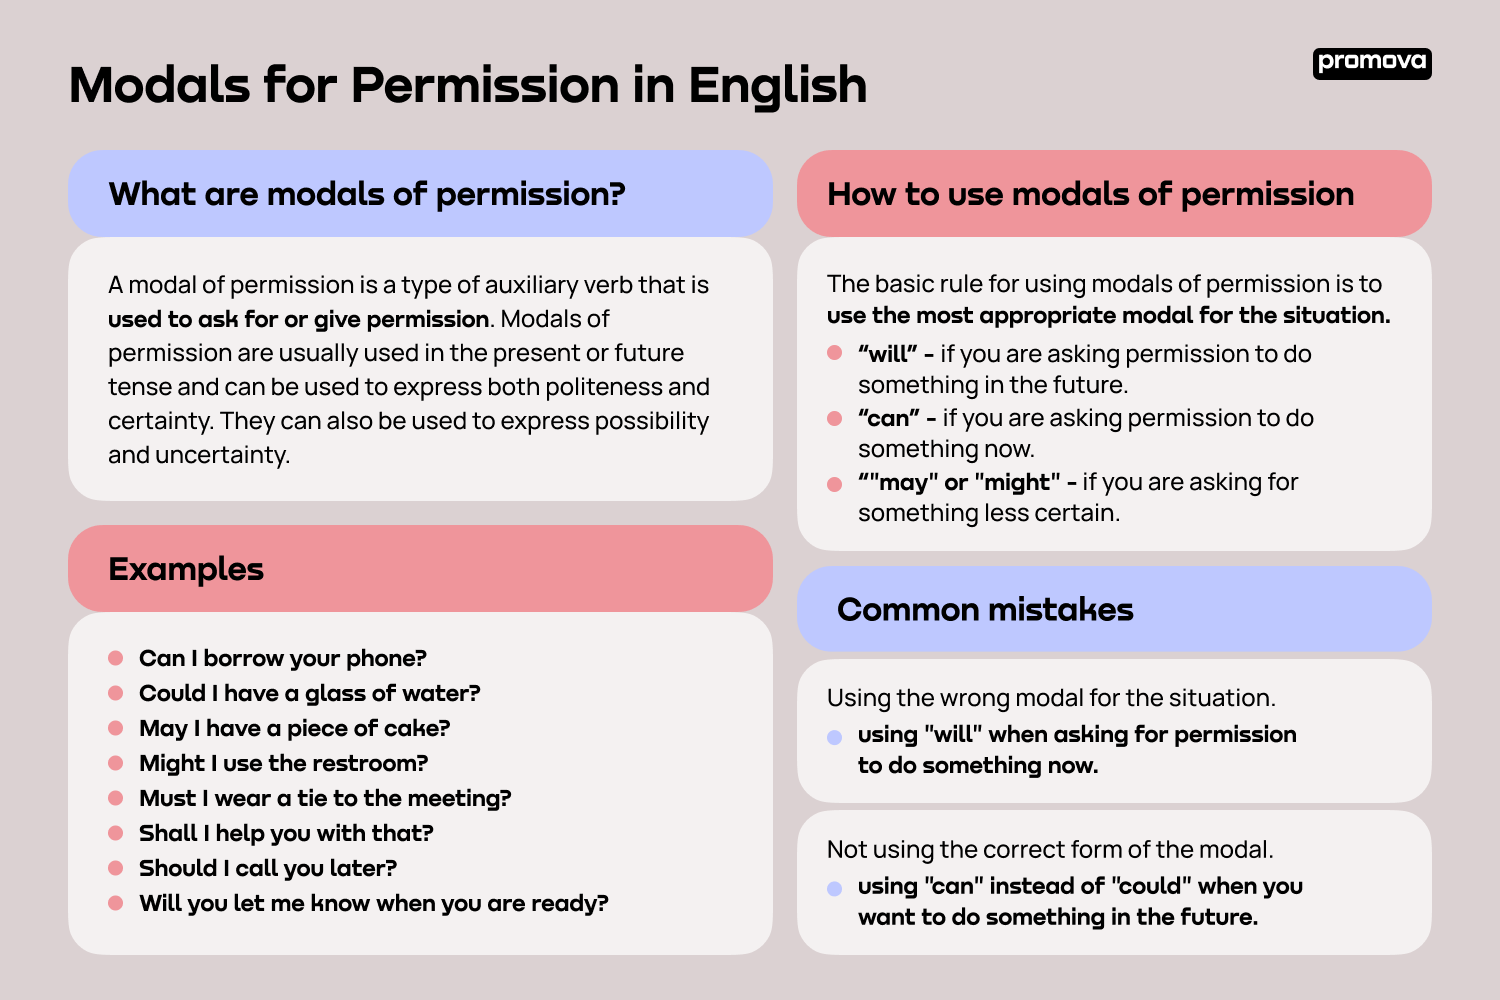 Explore Modals for Permission in English